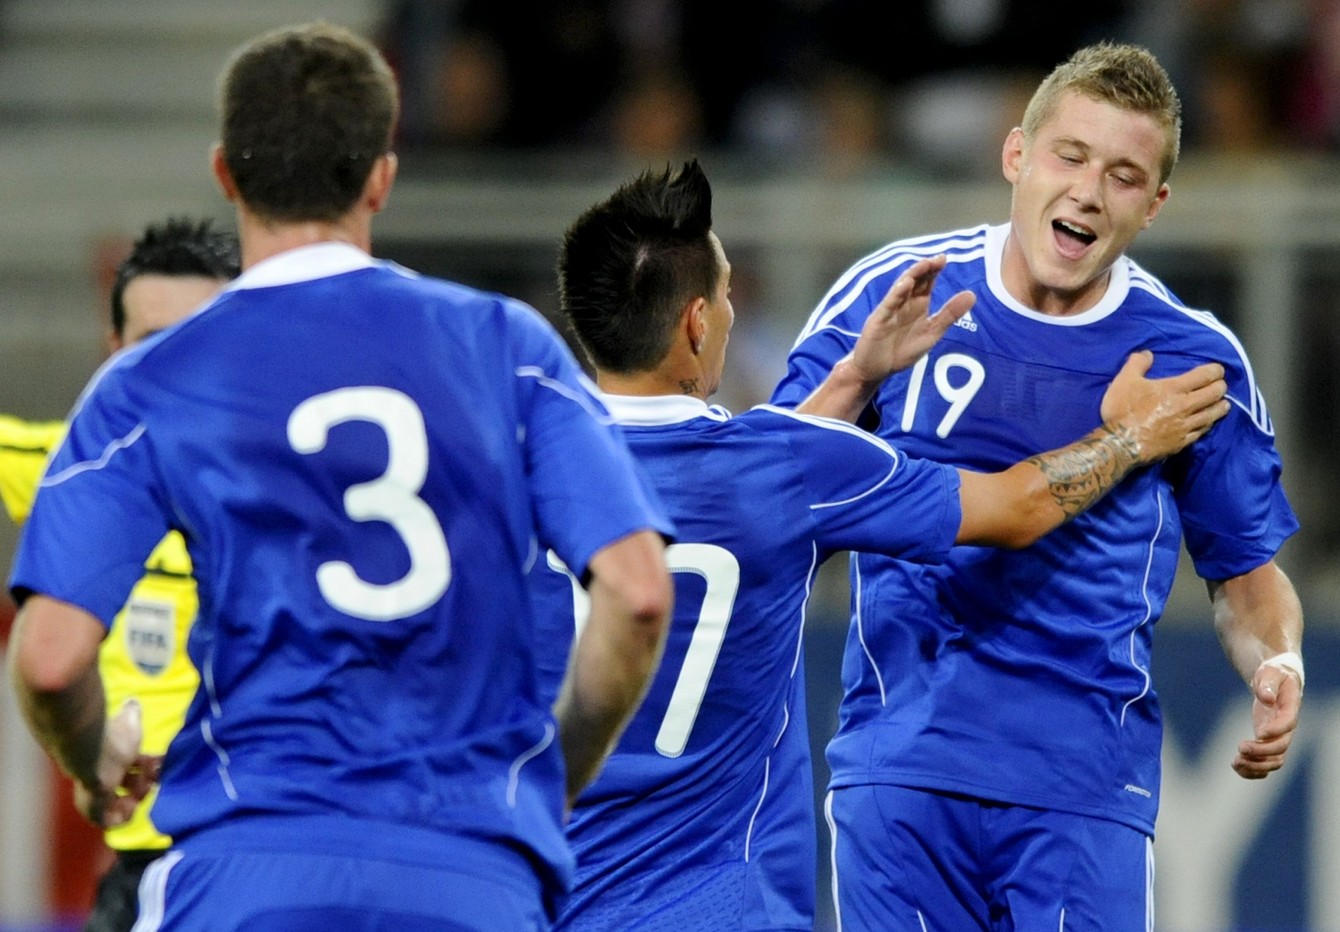 Juraj Kucka oslavuje svoj prvý reprezentačný gól v prípravnom zápase Rakúsko - Slovensko 1:2 (10.8.2011, Klagenfurt)